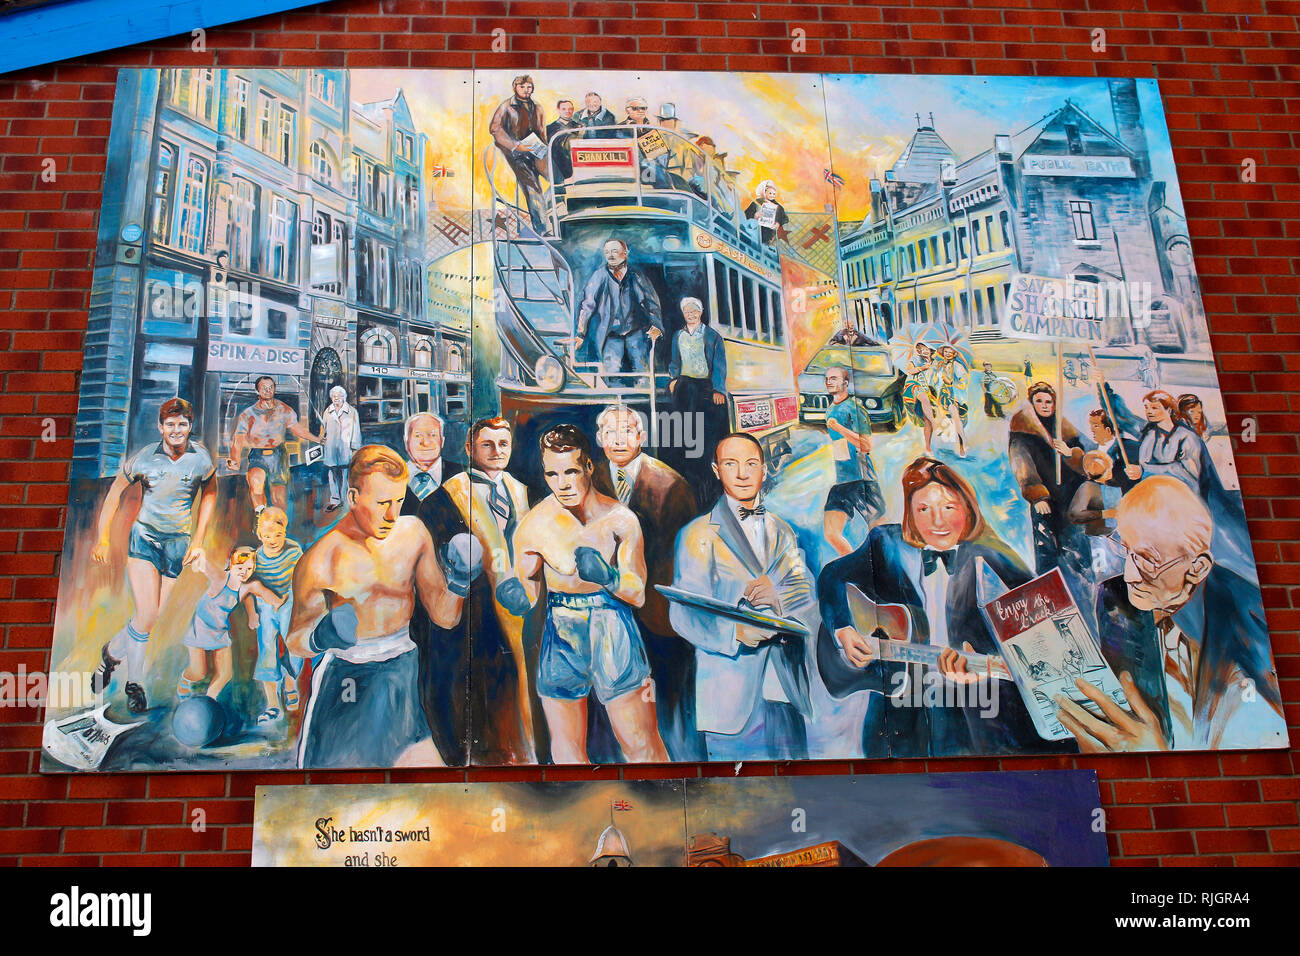 'Ulster' - Wandbild/ Mural, das an den Buergerkrieg erinnert, im protestantischen Teil Belfasts, in der Naehe der Shankill Road, Belfast, Nordirland   Stock Photo